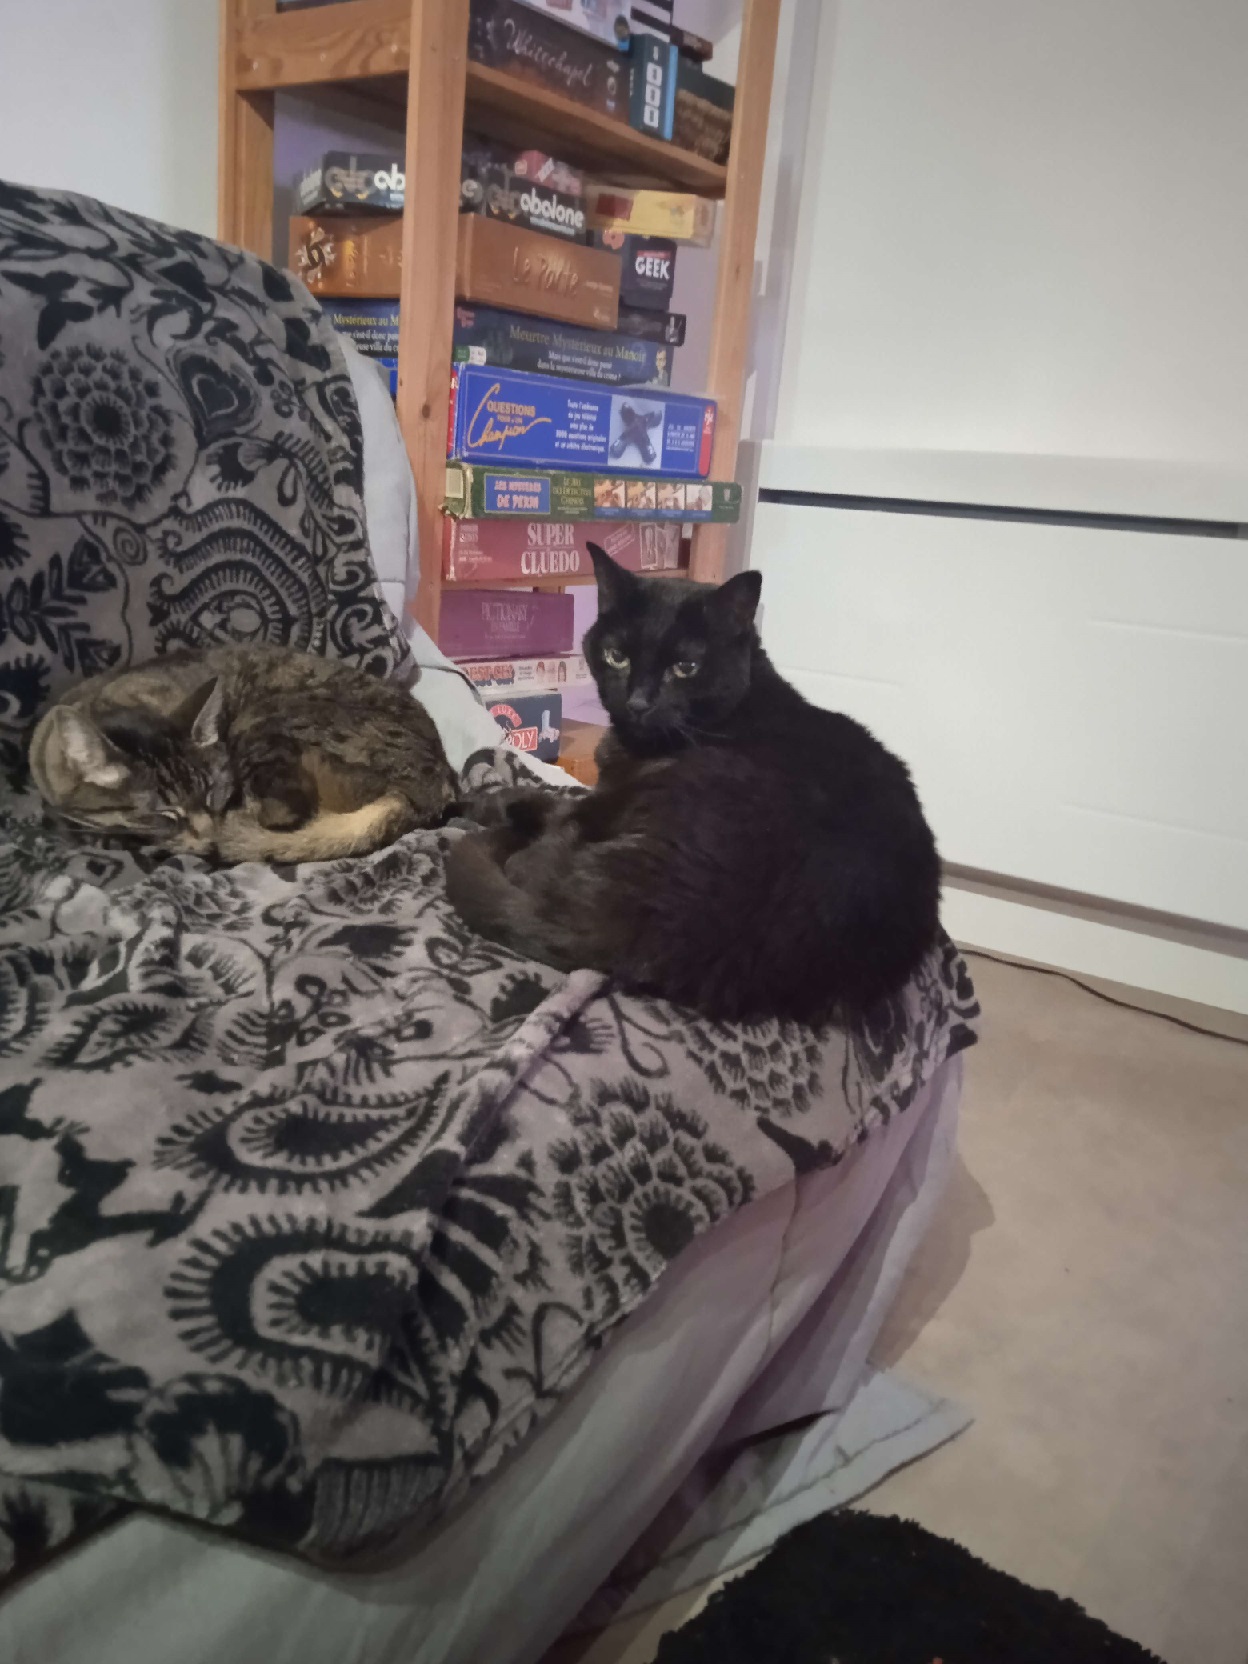 Photo de deux chats sur un canapé, un tabby et un noir